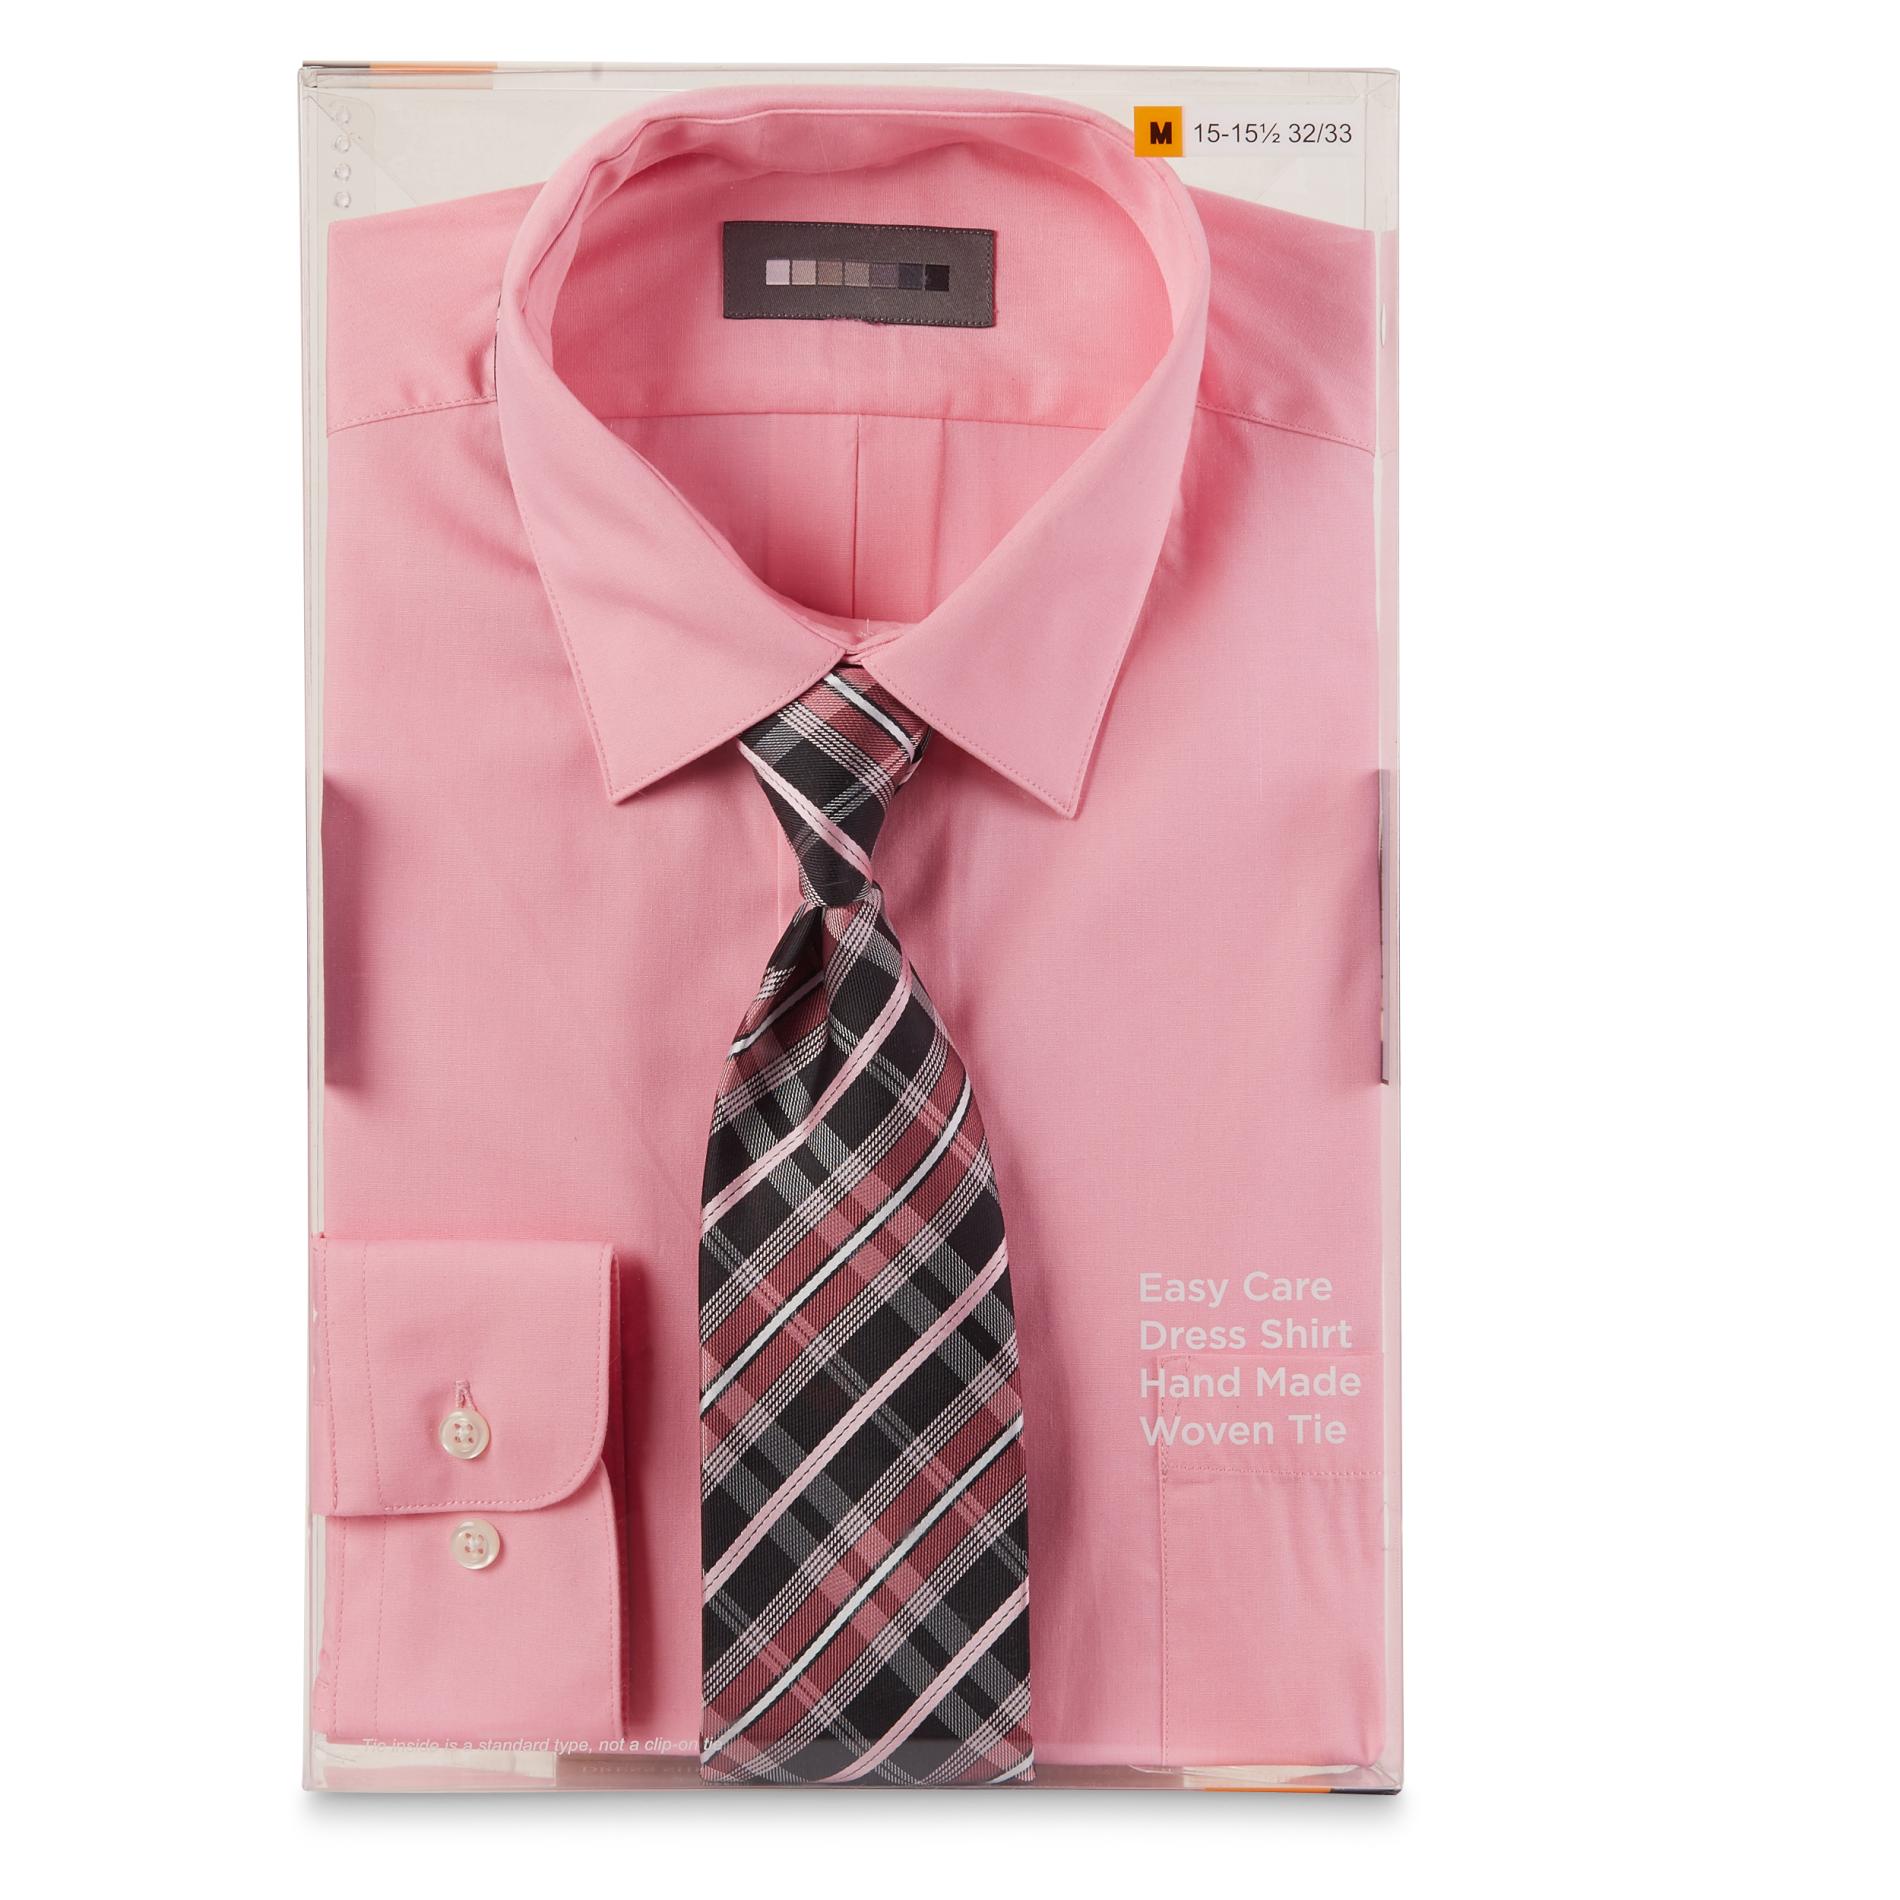 Covington Men's Dress Shirt & Necktie - Plaid